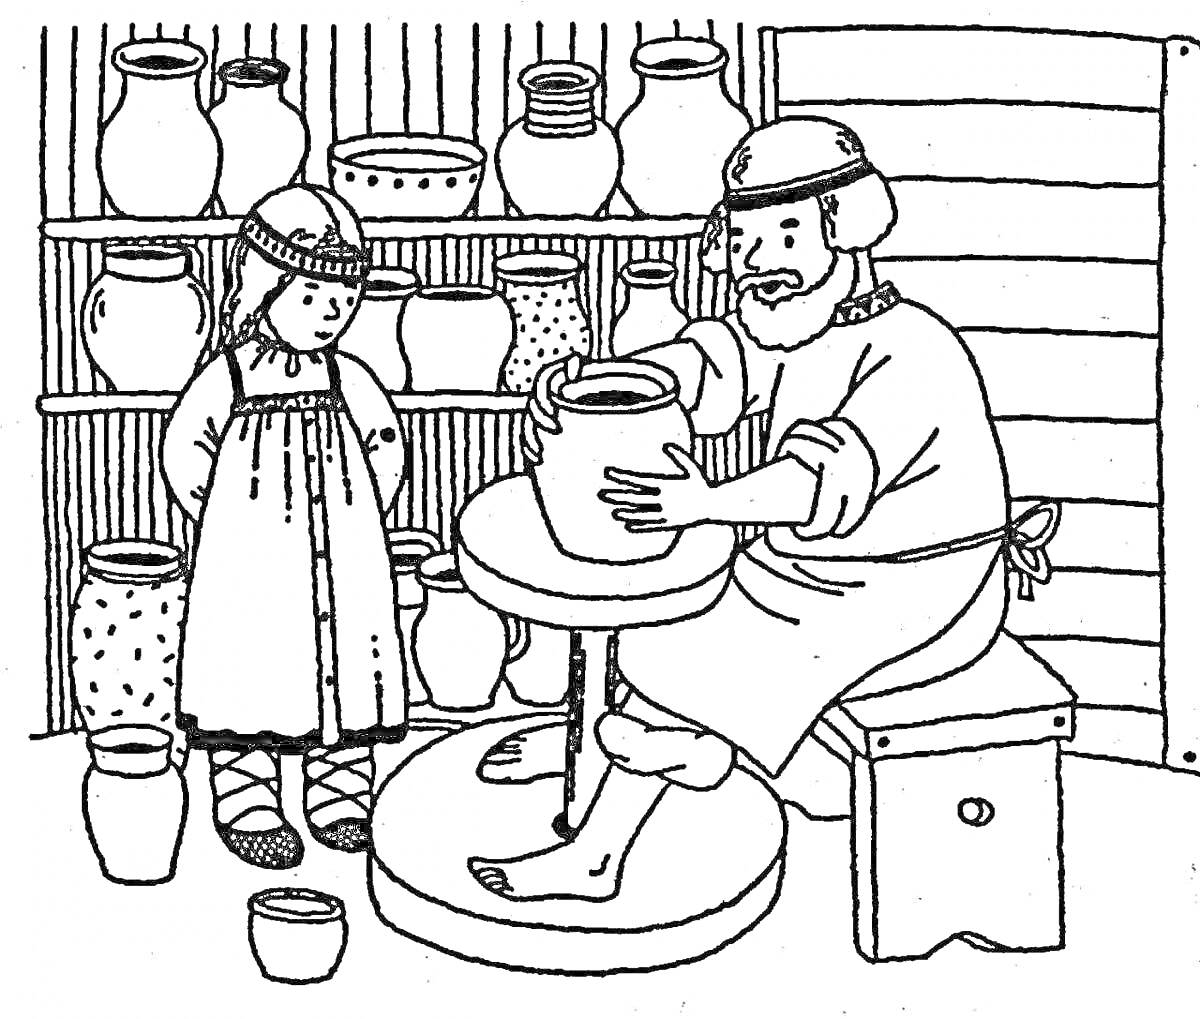 Гончар за работой, девушка, полка с глиняной посудой, деревянный стол, гончарный круг